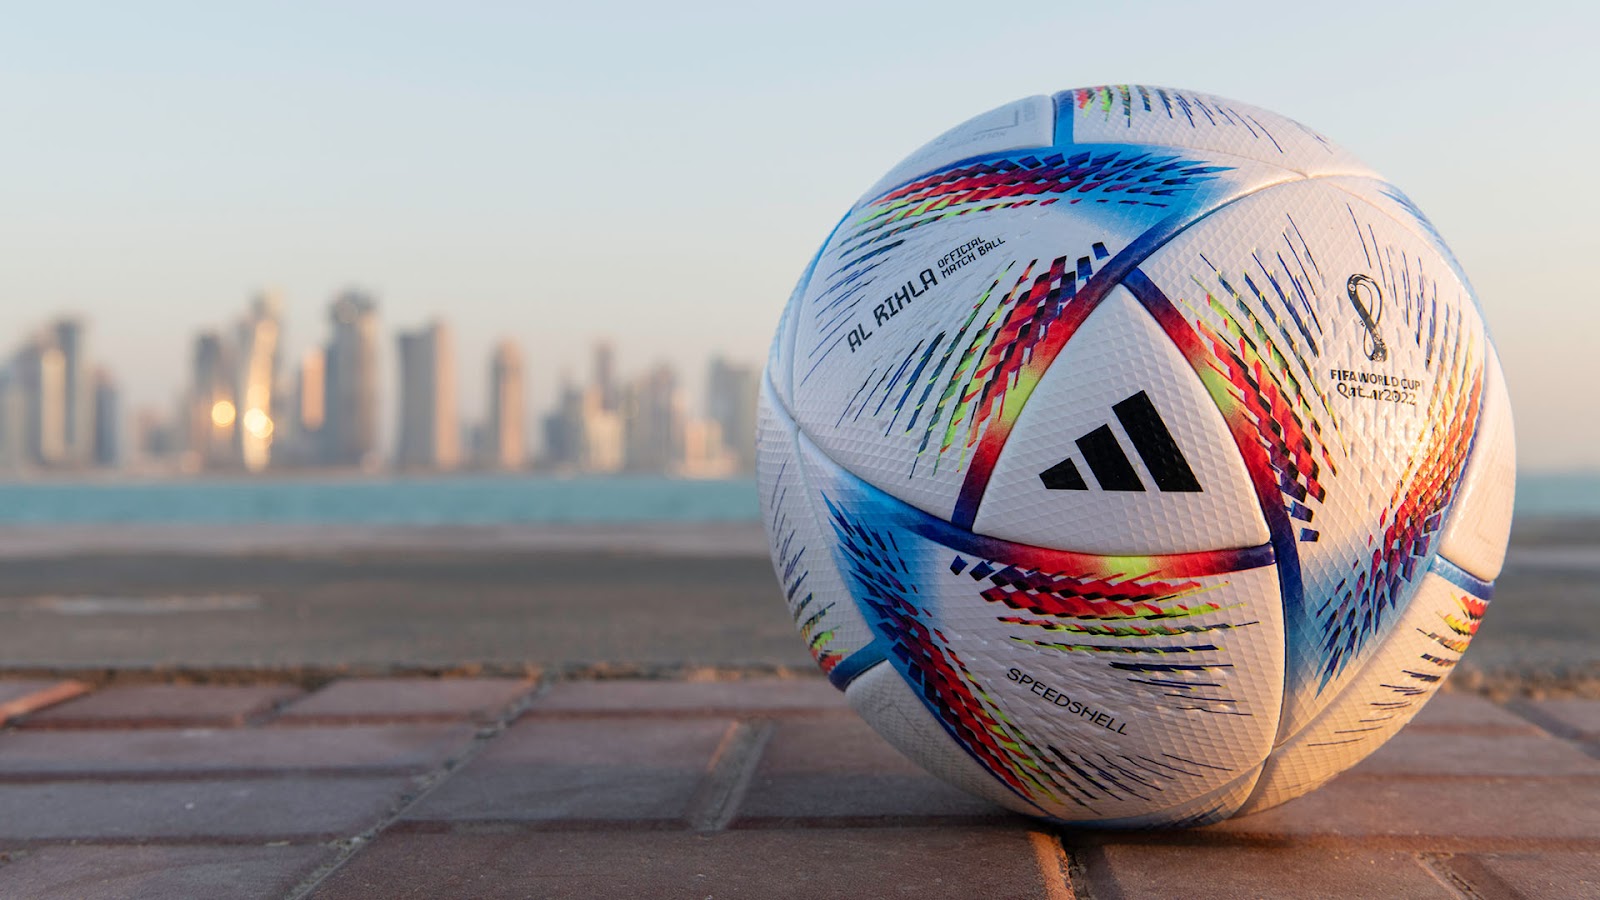 Balon oficial Qatar 2022 - Foto cortesía de Adidas